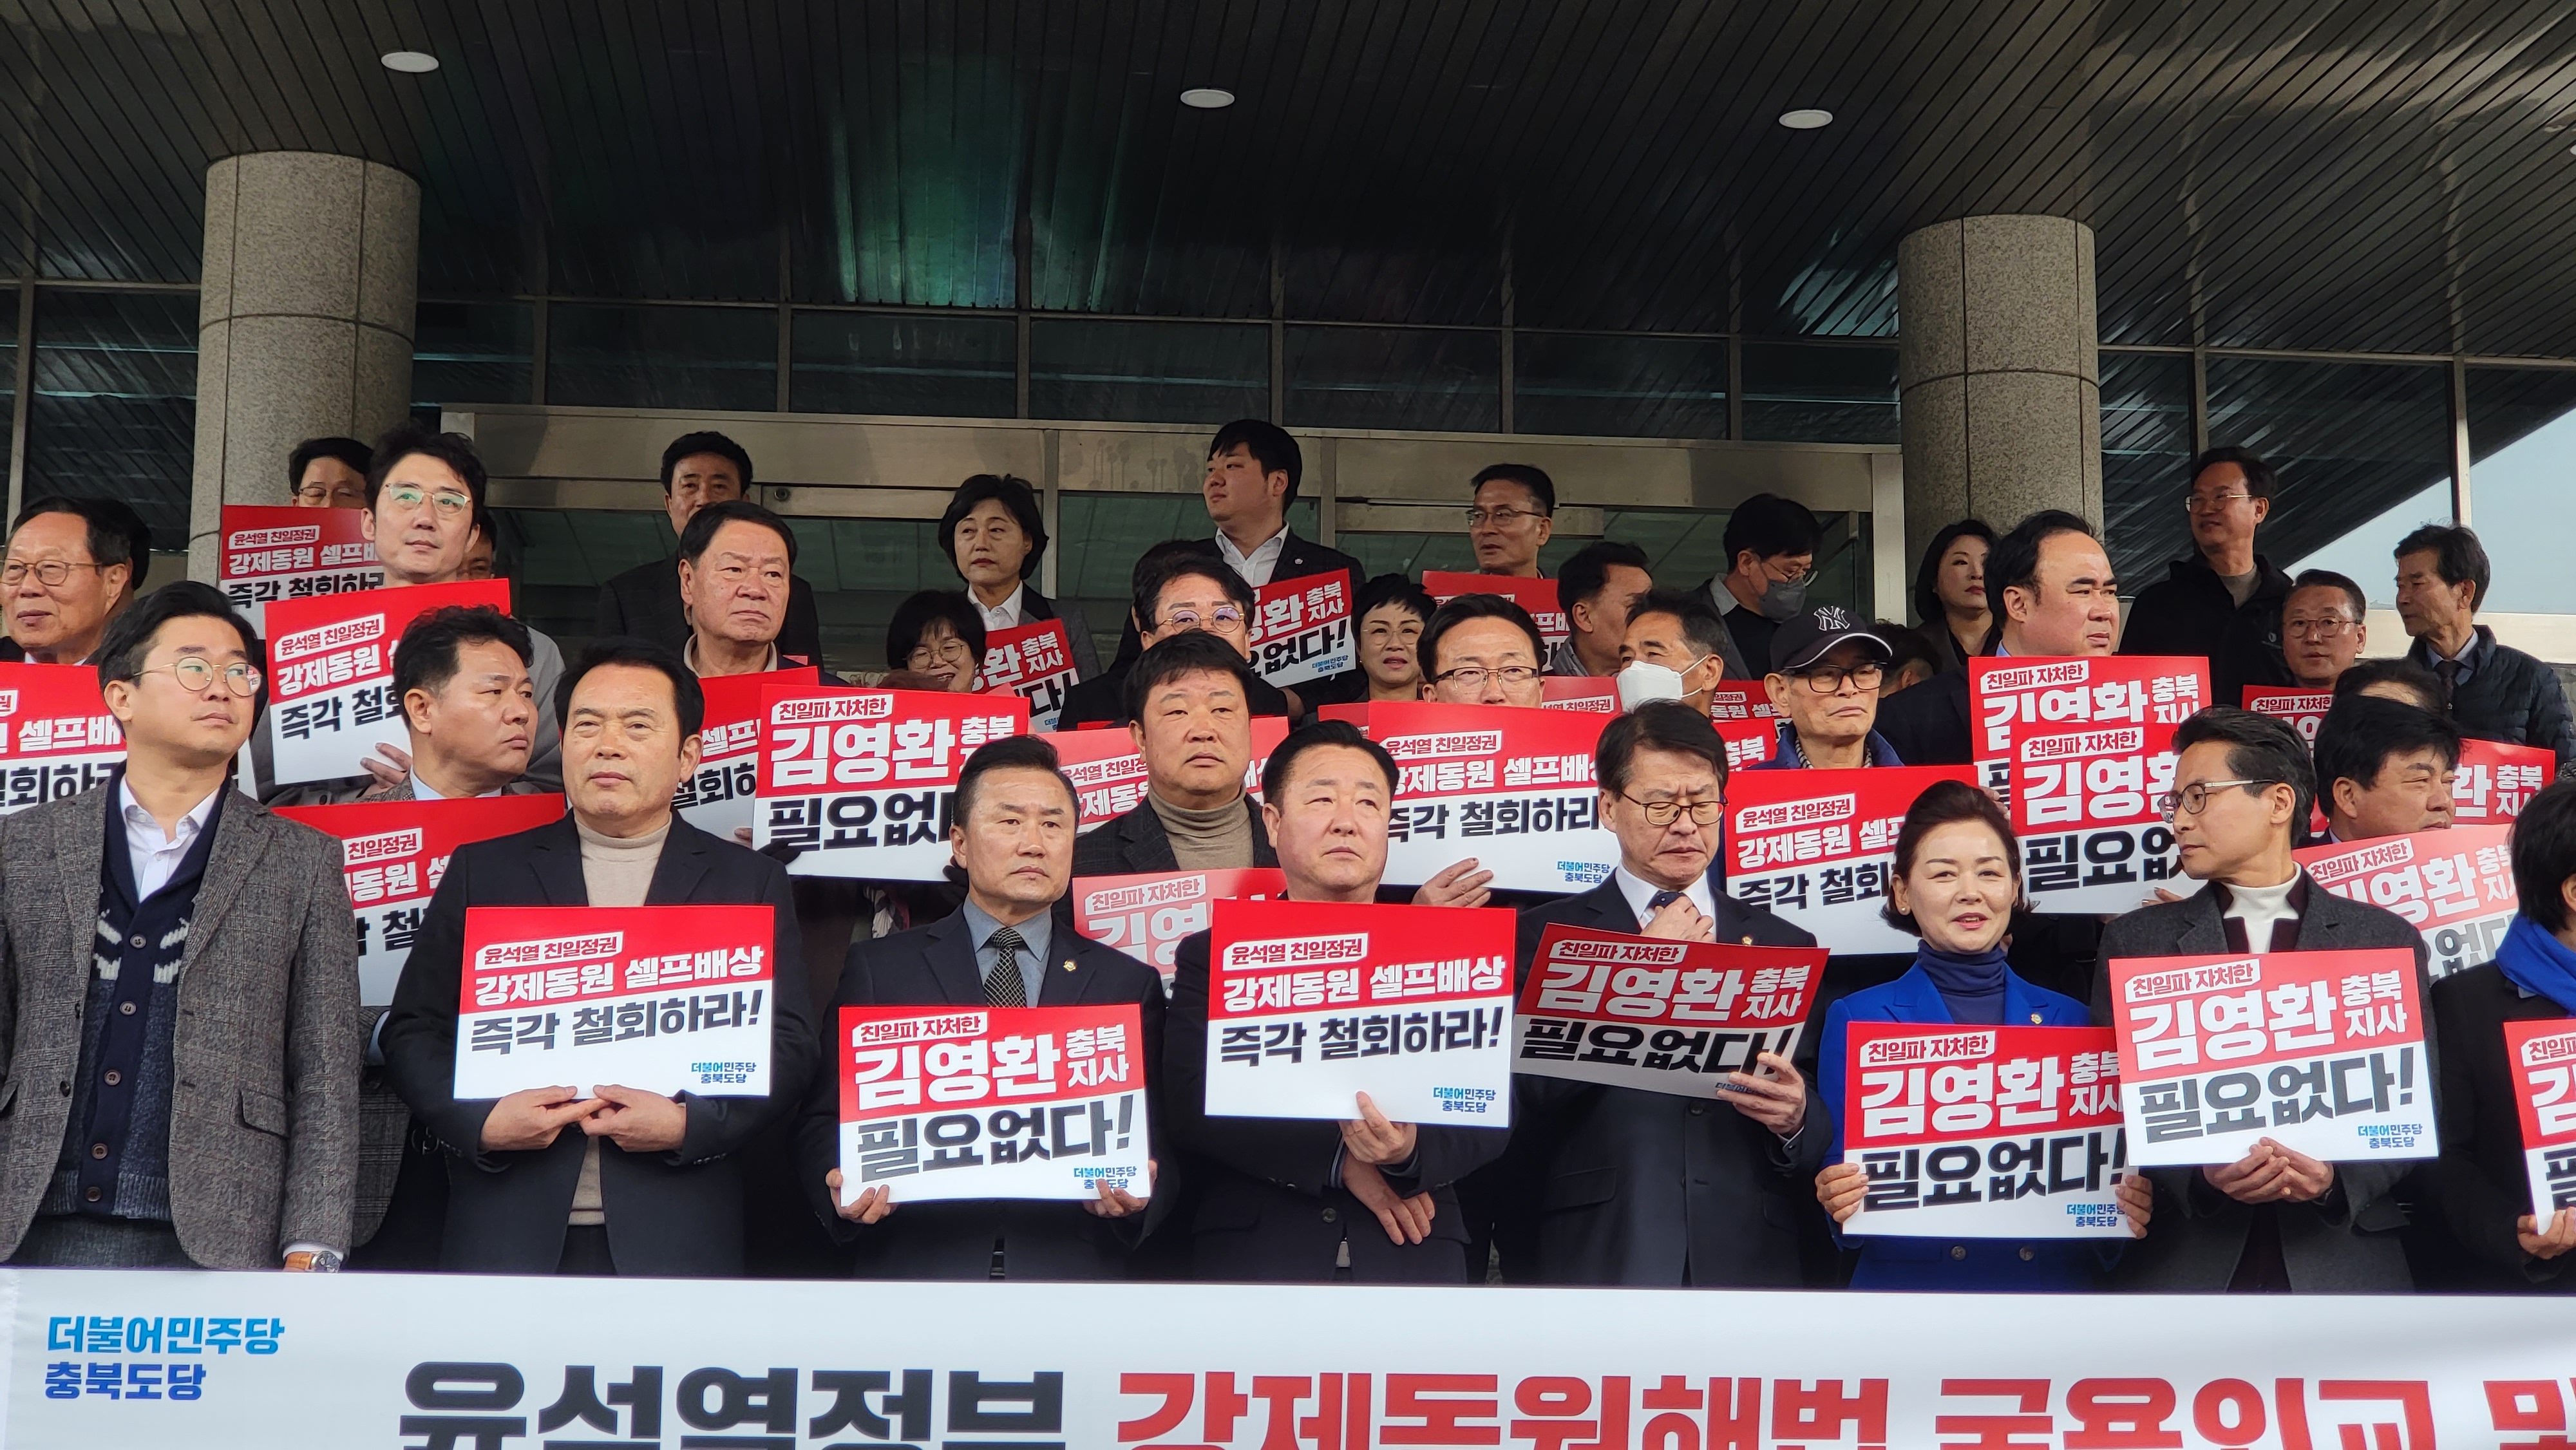 더불어민주당 충북도당이 9일 기자회견을 갖고 김영환 충북지사의 사죄를 촉구하고 있다.